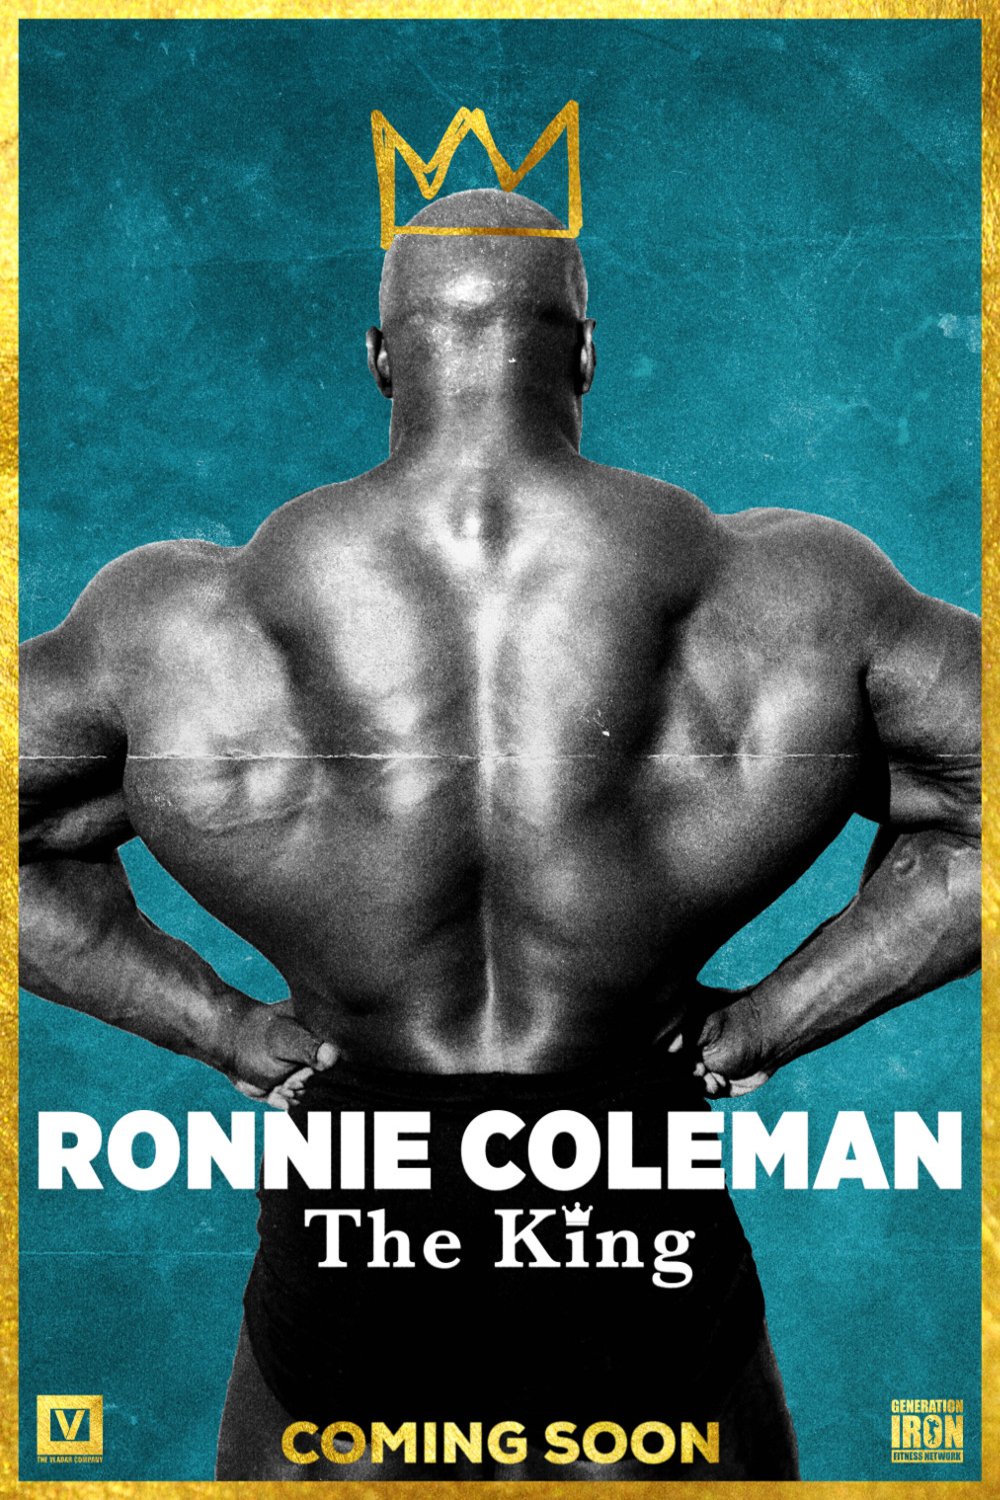 L'affiche du film Ronnie Coleman: The King